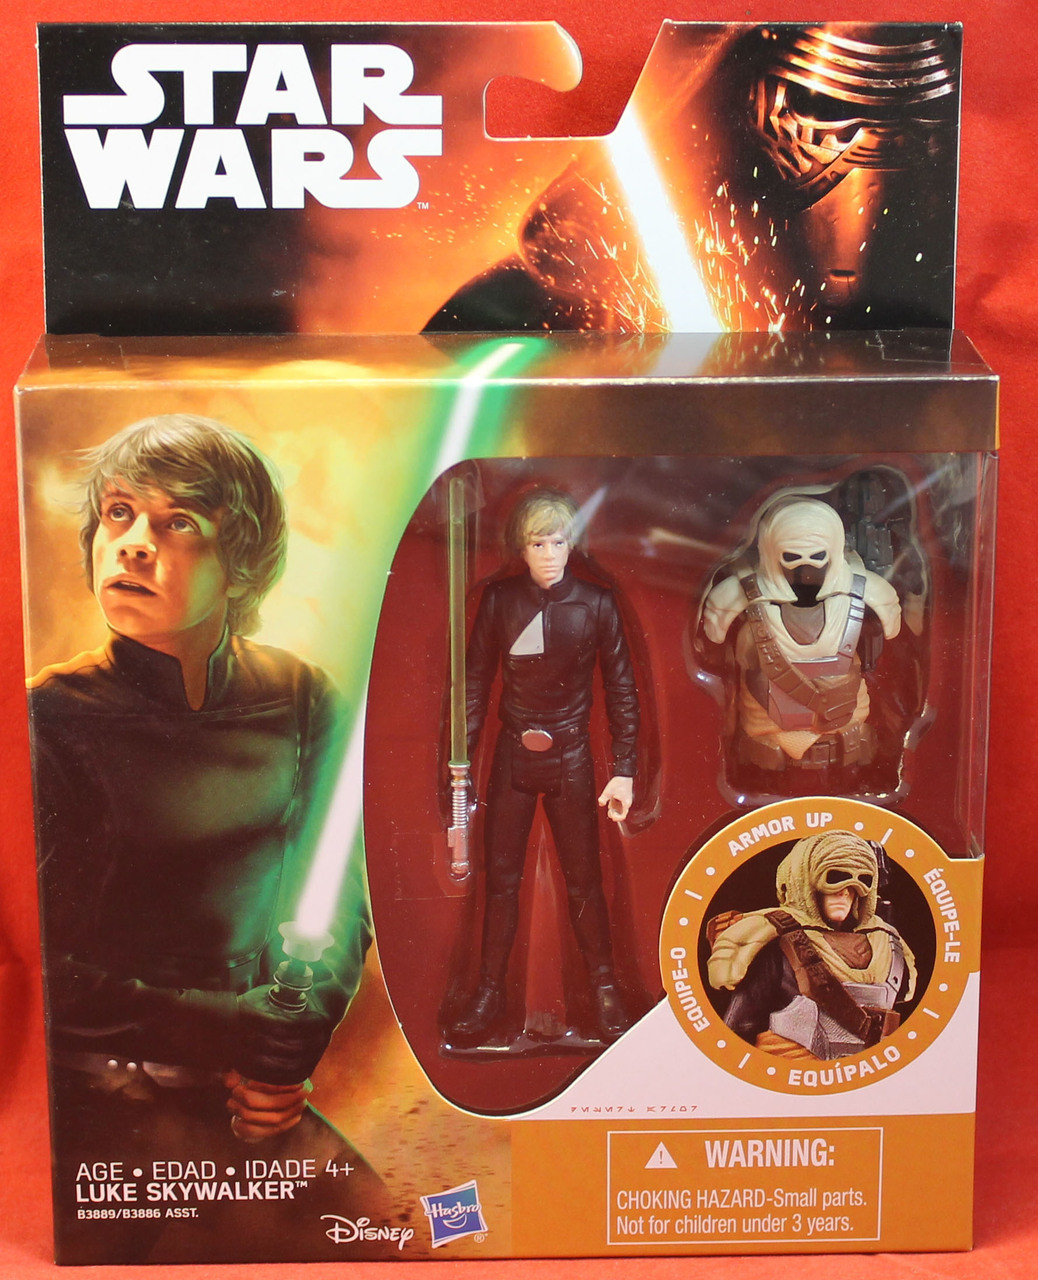 Star Wars TFA The Force Awakens Armor Up 3.75" Luke Skywalker